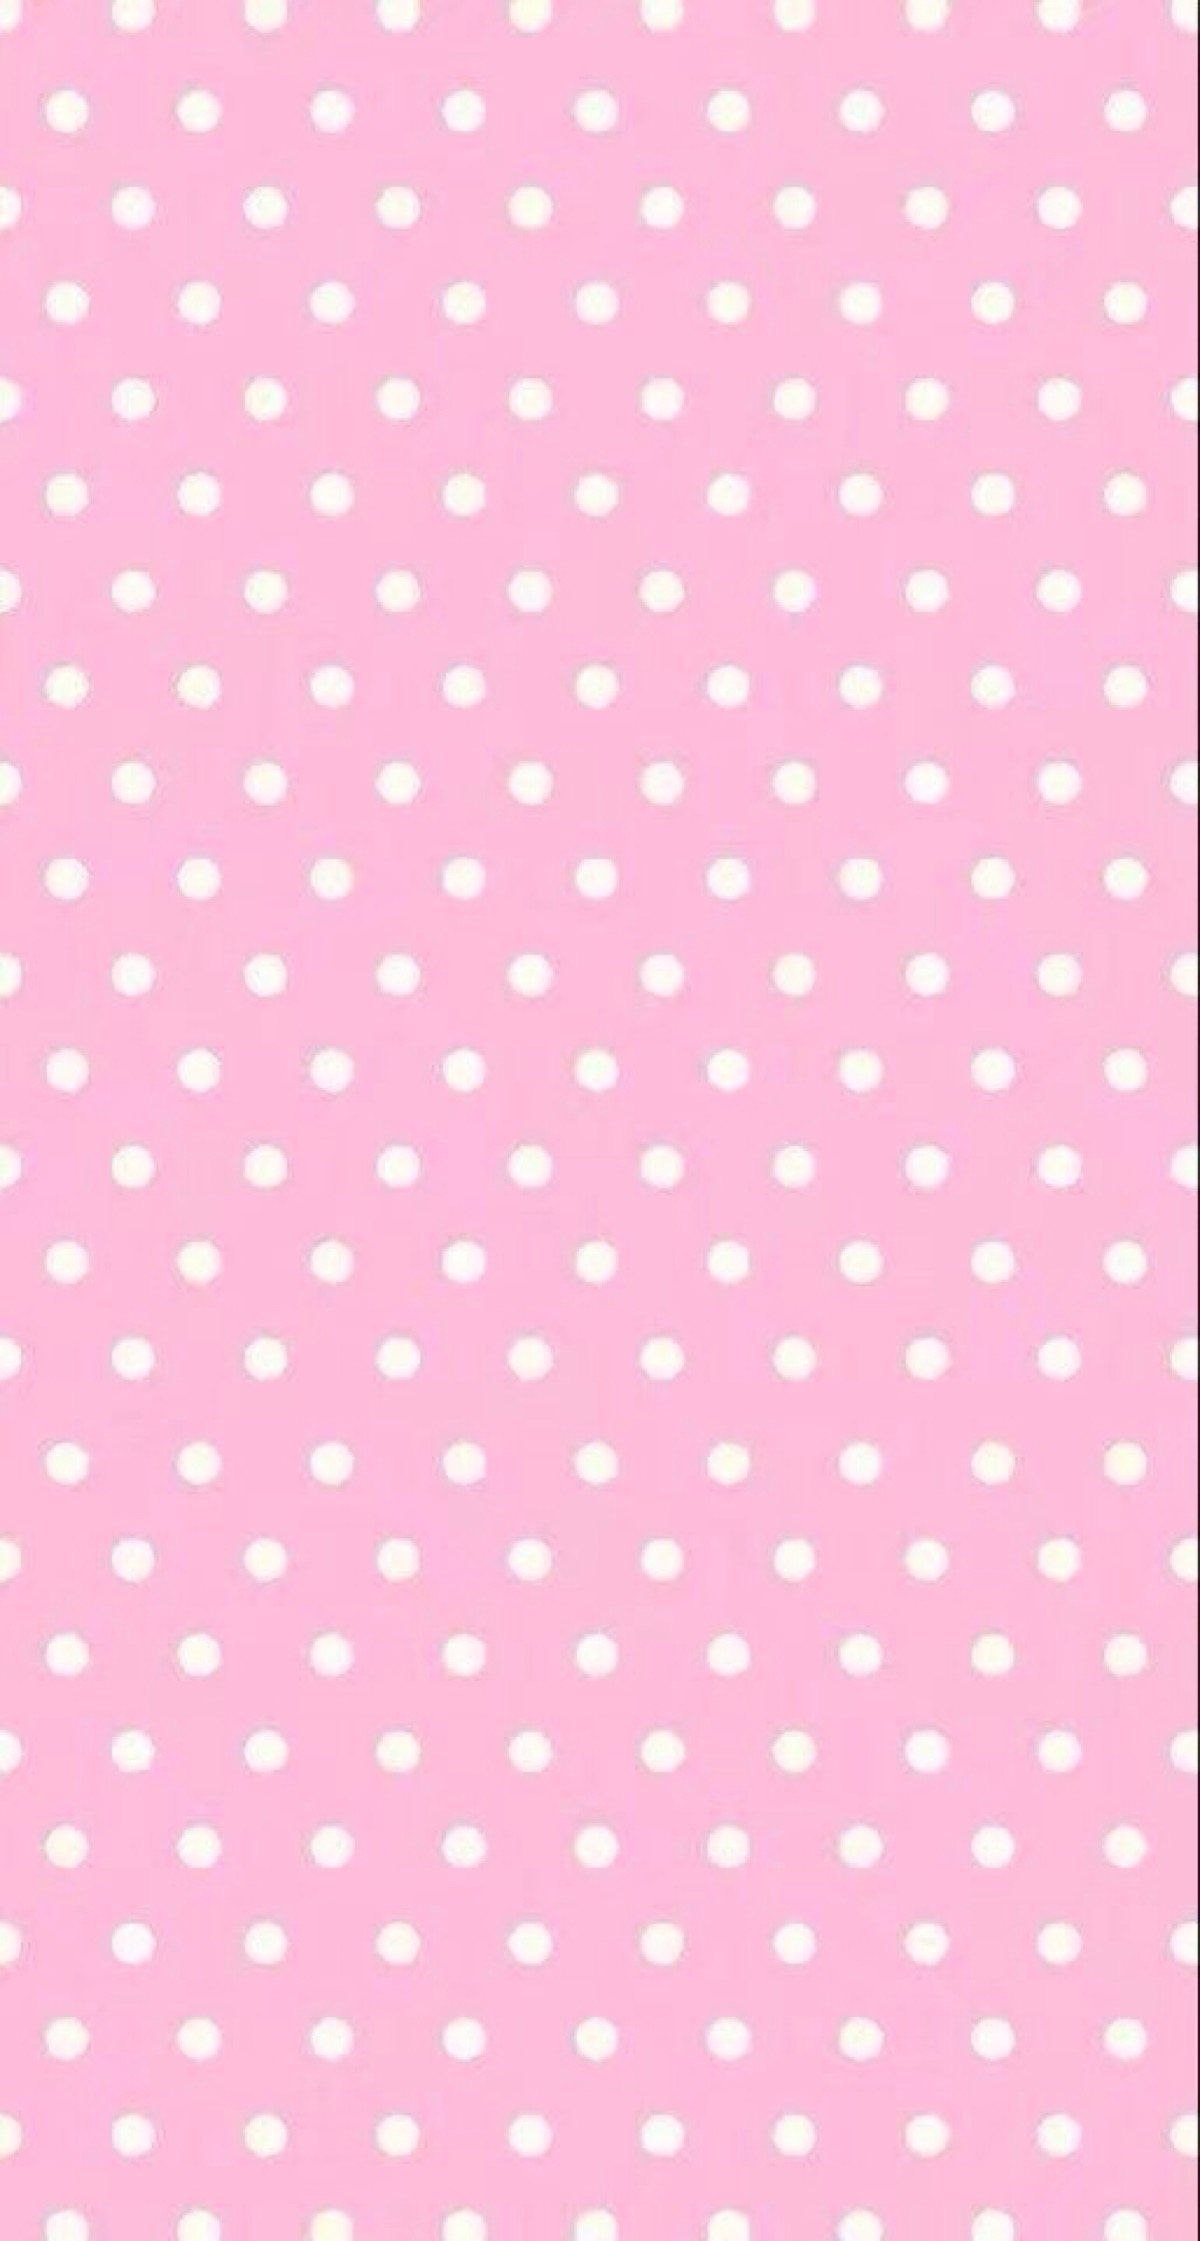 纯淡粉色手机壁纸高清图片